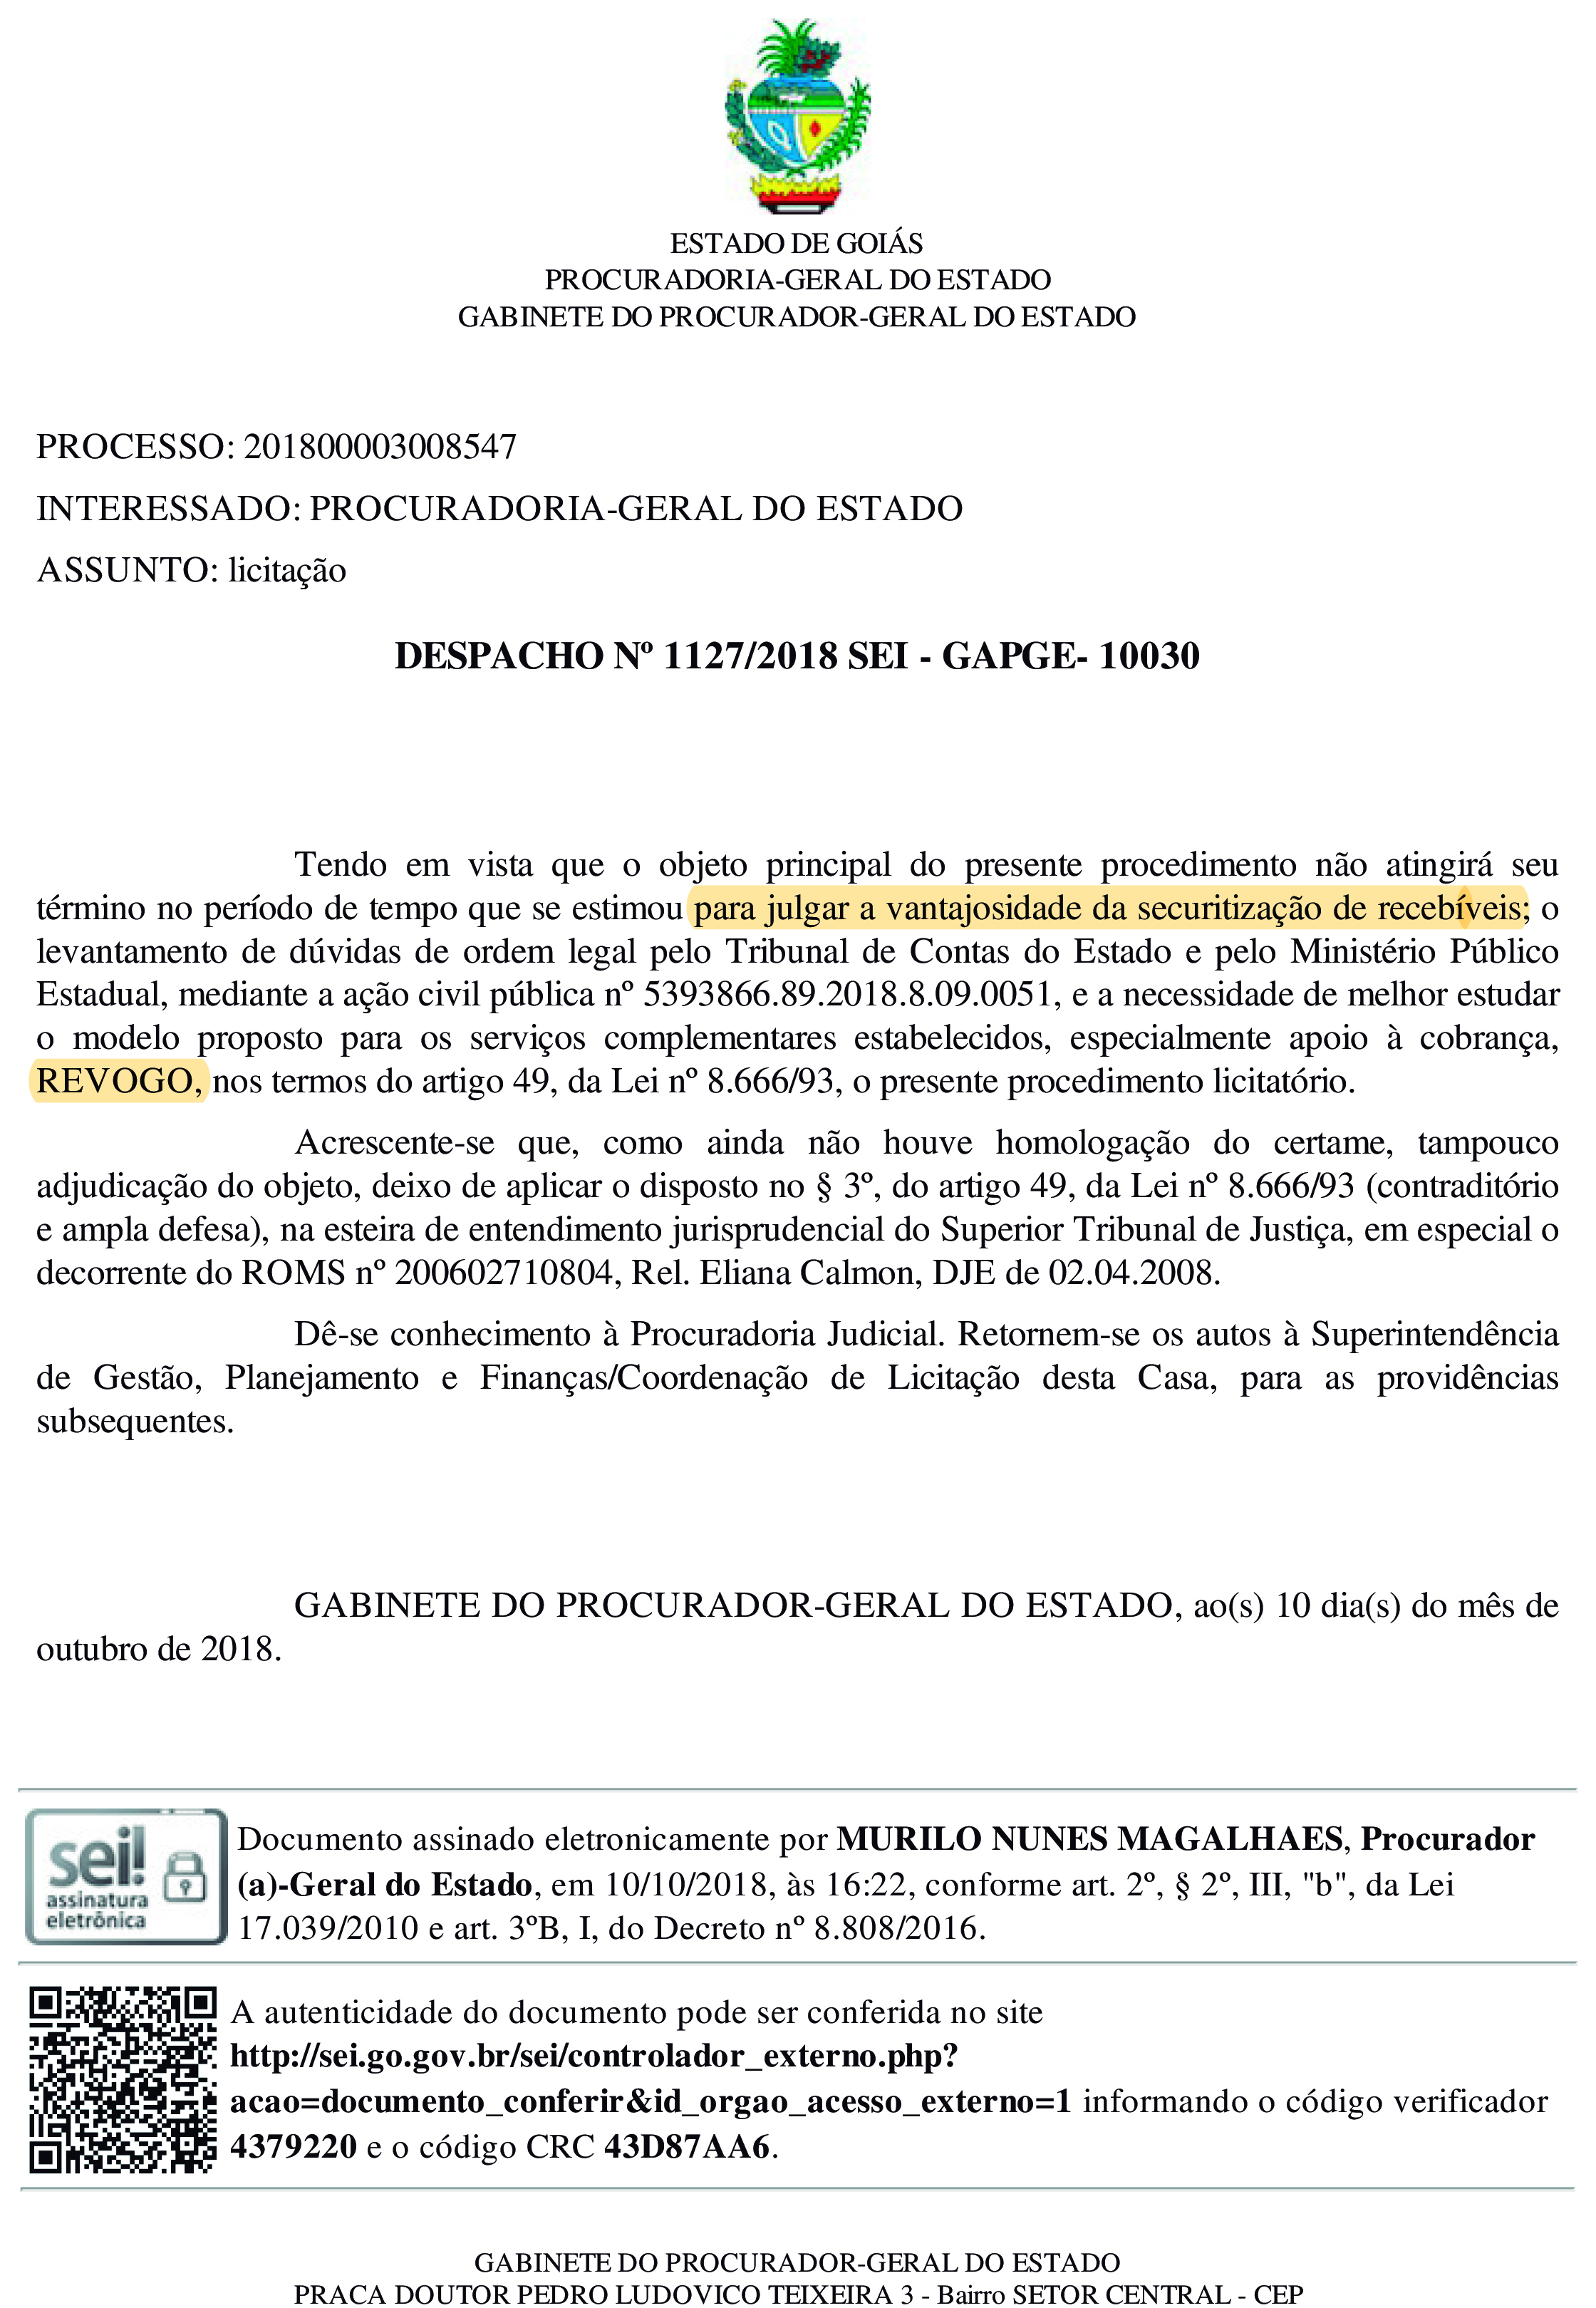 Interrompida a implantação do esquema de Securitização de Créditos em Goiás